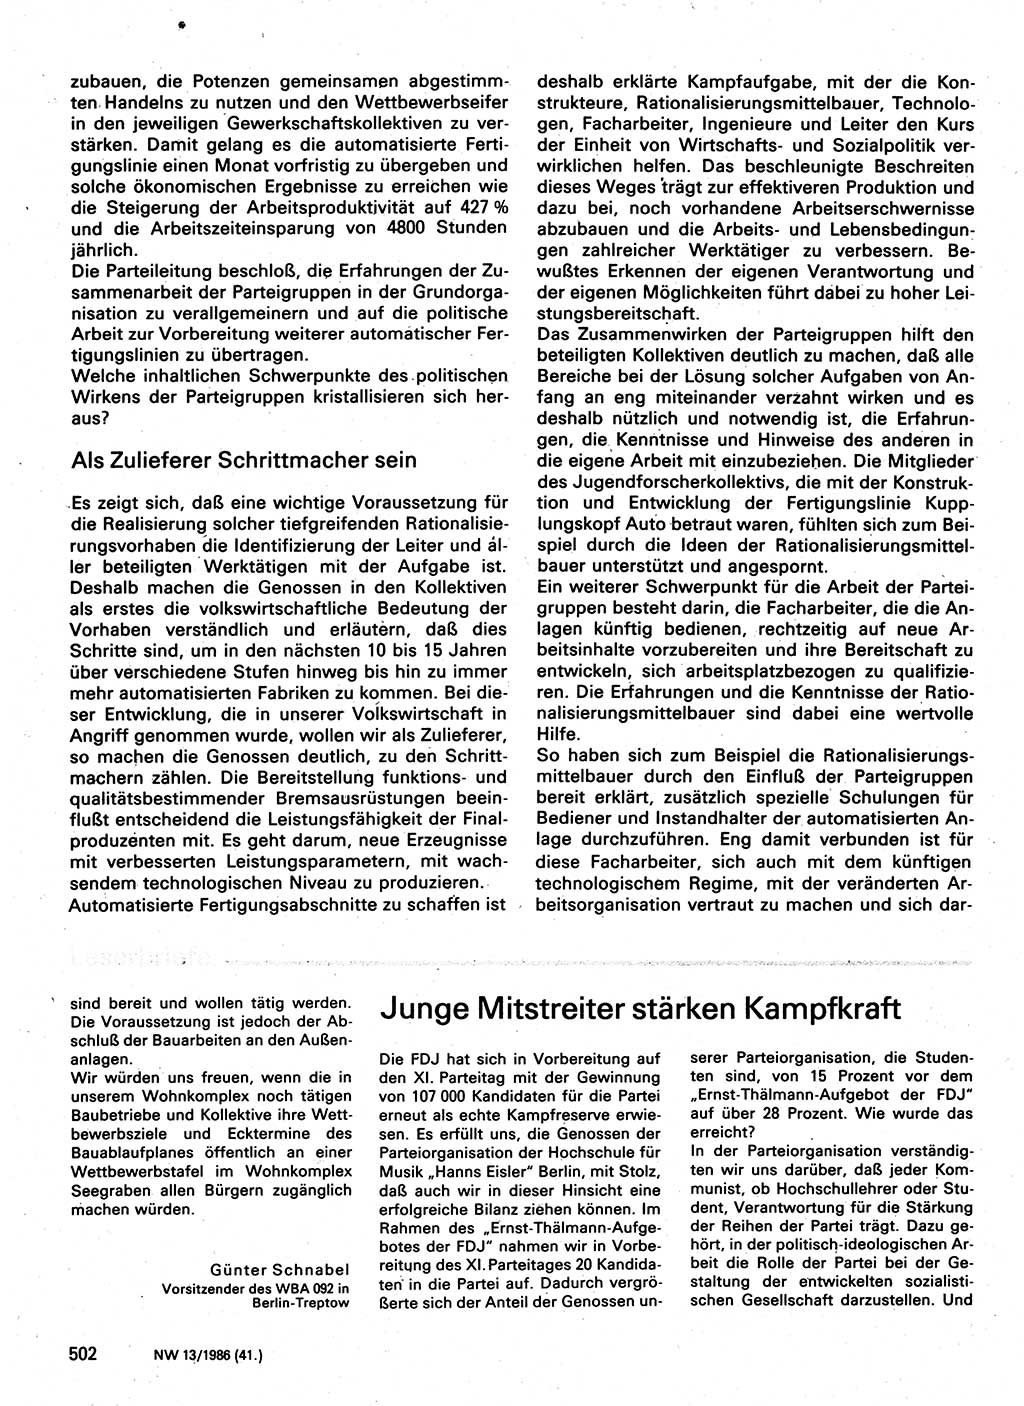 Neuer Weg (NW), Organ des Zentralkomitees (ZK) der SED (Sozialistische Einheitspartei Deutschlands) für Fragen des Parteilebens, 41. Jahrgang [Deutsche Demokratische Republik (DDR)] 1986, Seite 502 (NW ZK SED DDR 1986, S. 502)